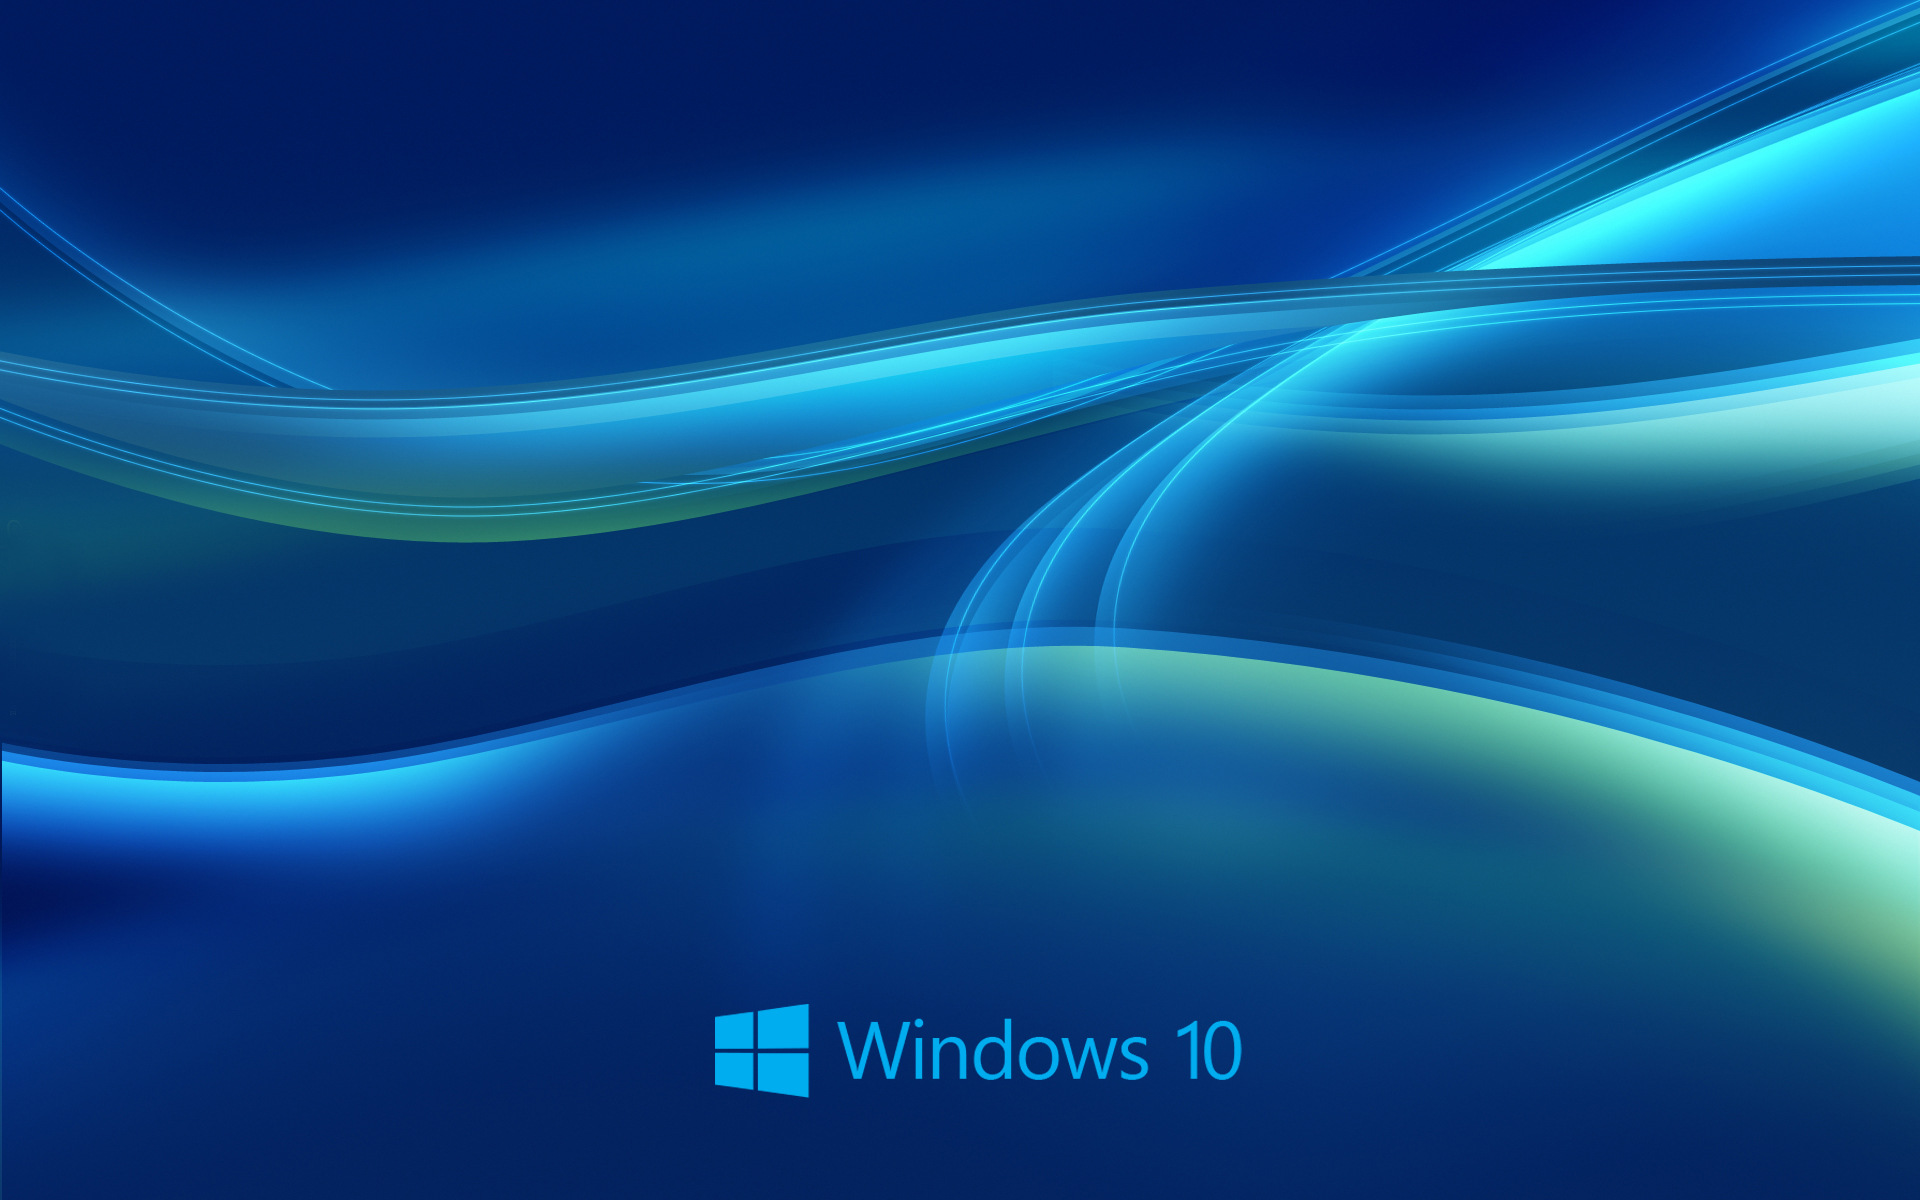 Win 10 Wallpapers: Windows 10 là một hệ điều hành tuyệt vời với những bức ảnh nền tuyệt đẹp. Bạn sẽ yêu thích những bức ảnh này với độ phân giải cao và màu sắc sống động. Hãy xem ngay để trang trí desktop một cách tuyệt vời.